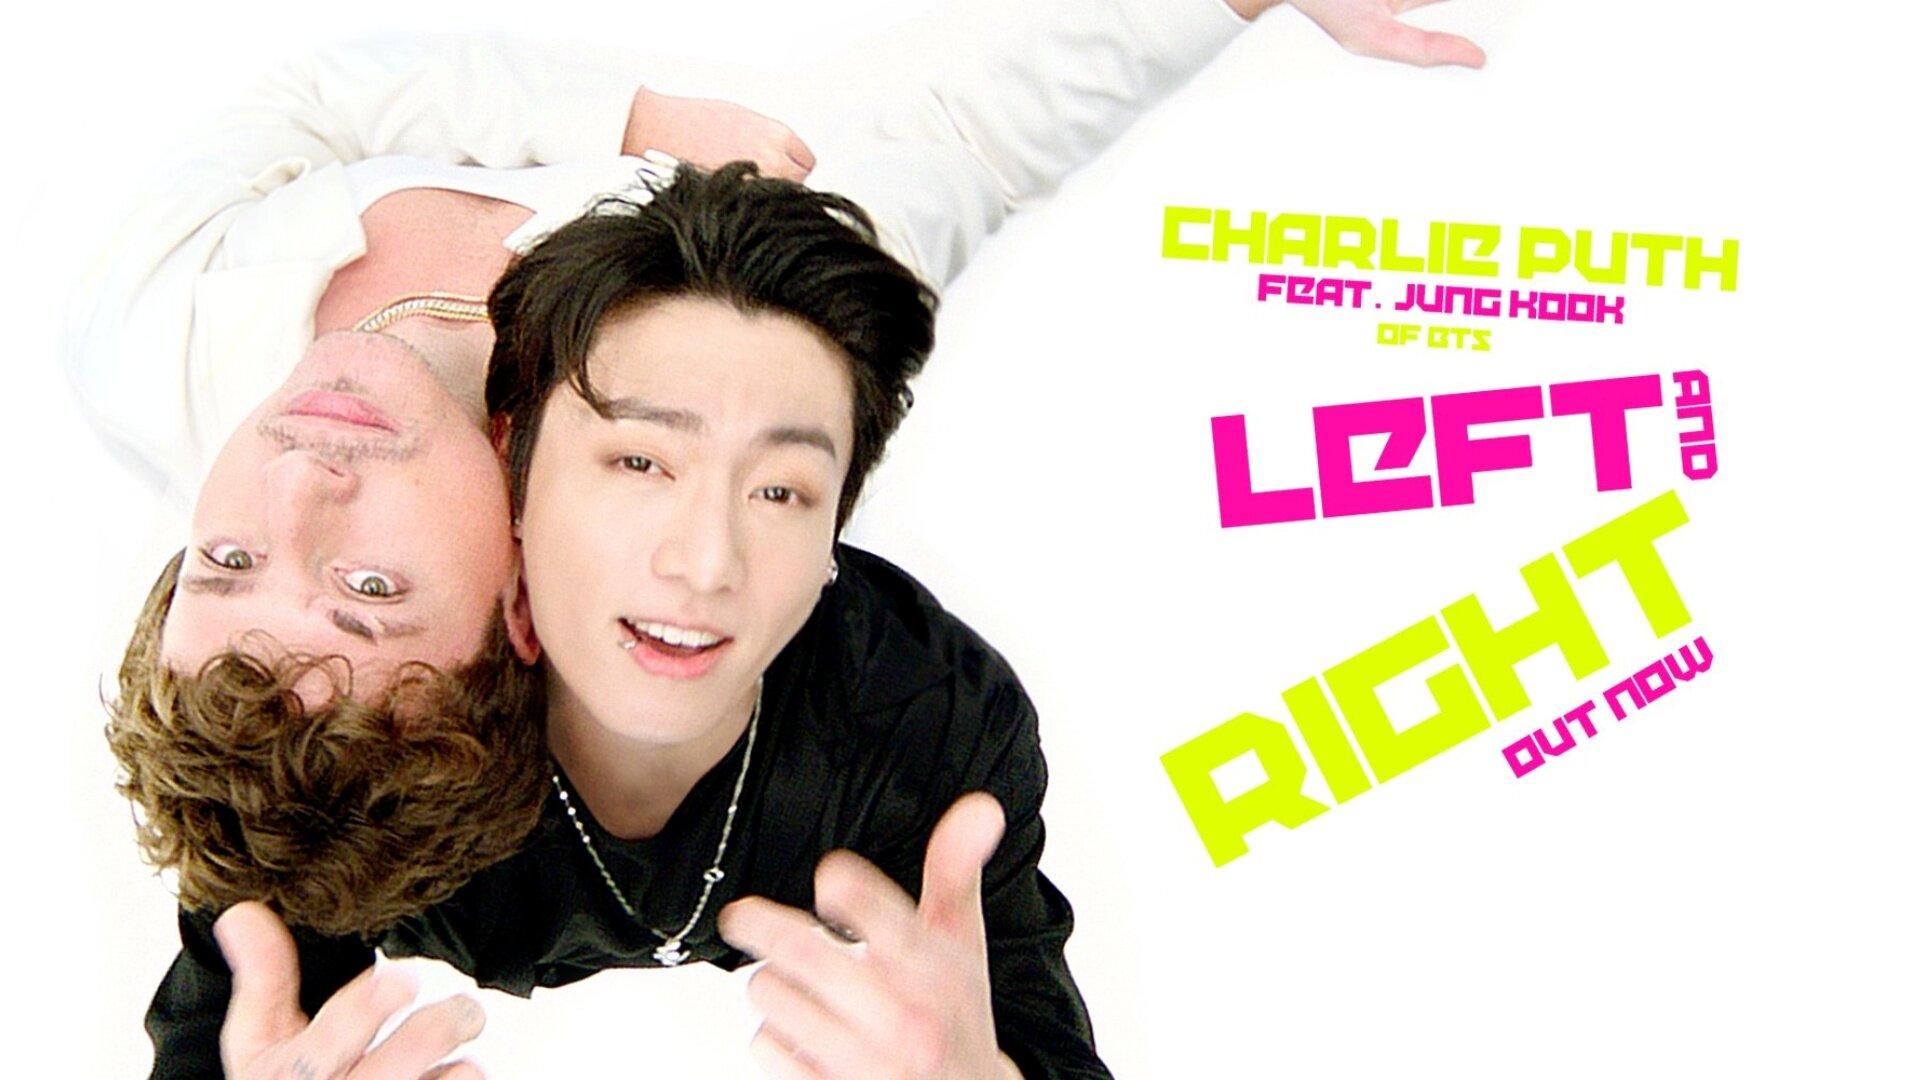 Jungkook gần đây đã hợp tác với nghệ sĩ người Mỹ Charlie Puth cho bài hát "Left and Right", được phát hành vào ngày 24 tháng 6 (Ảnh: Internet)